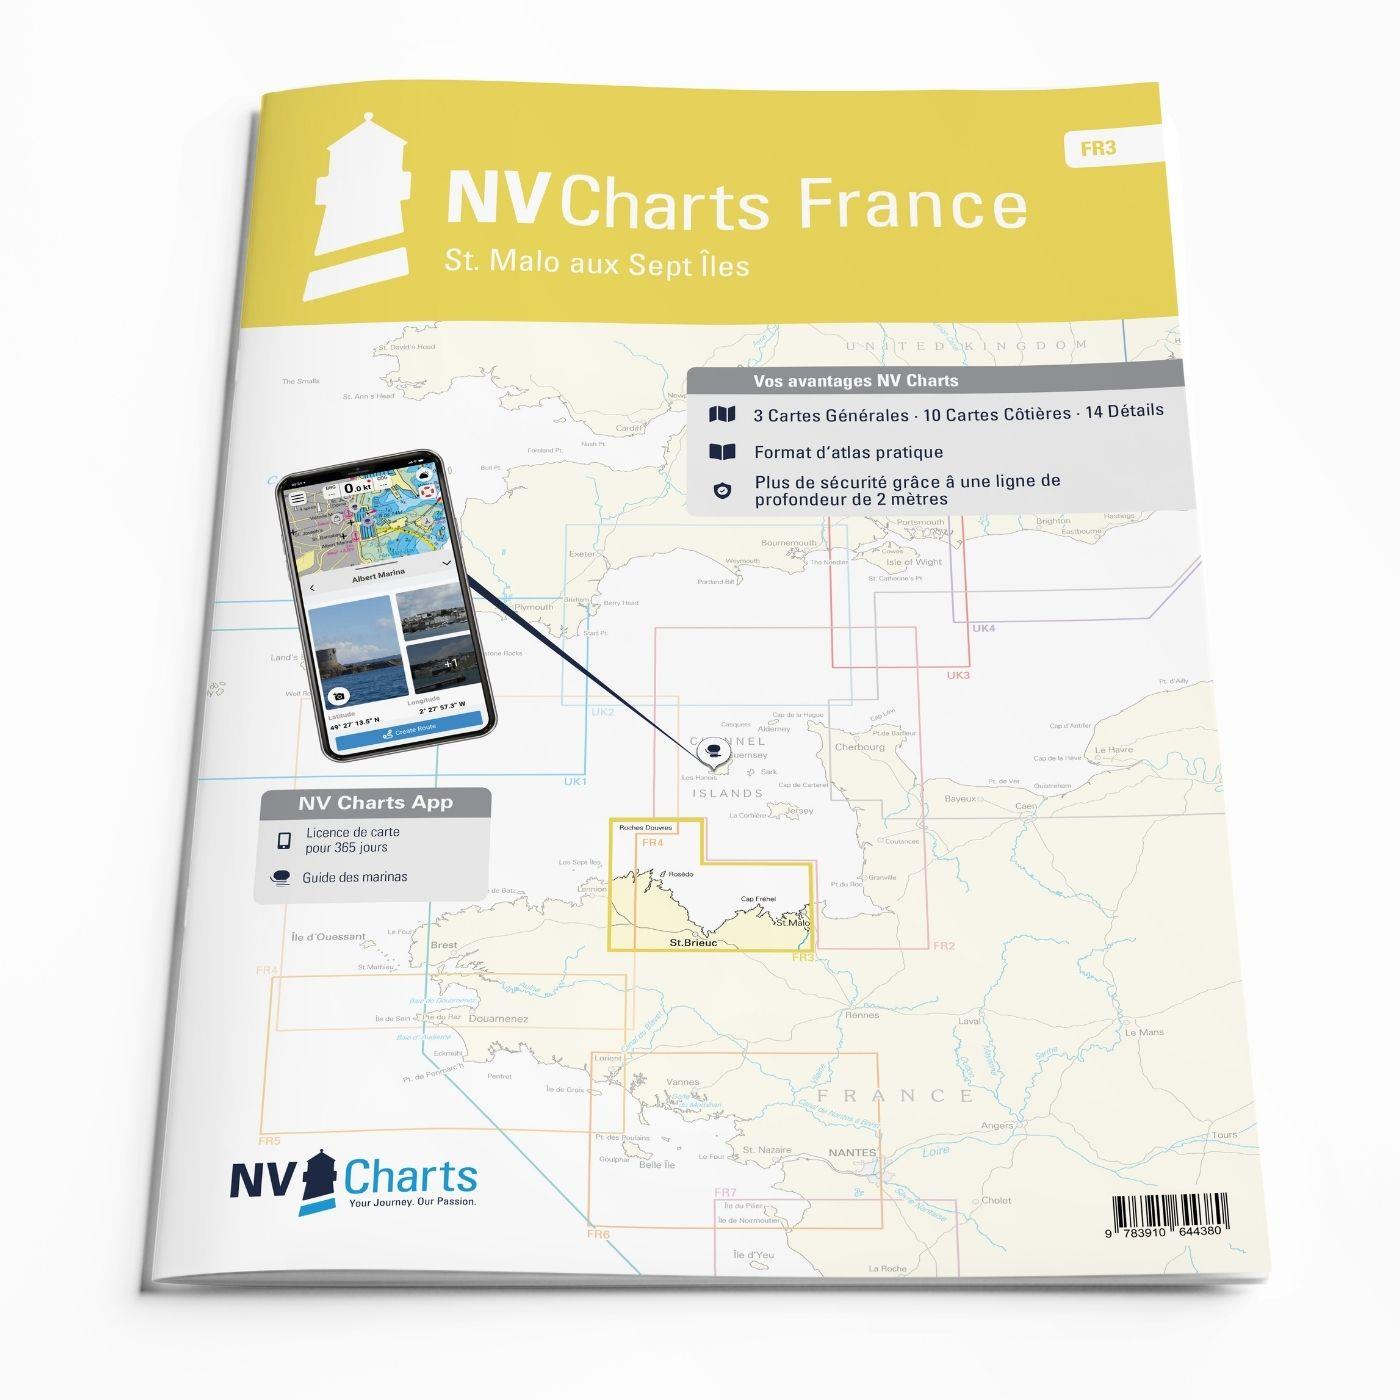 NV Charts France FR3 - St. Malo aux Sept Îles